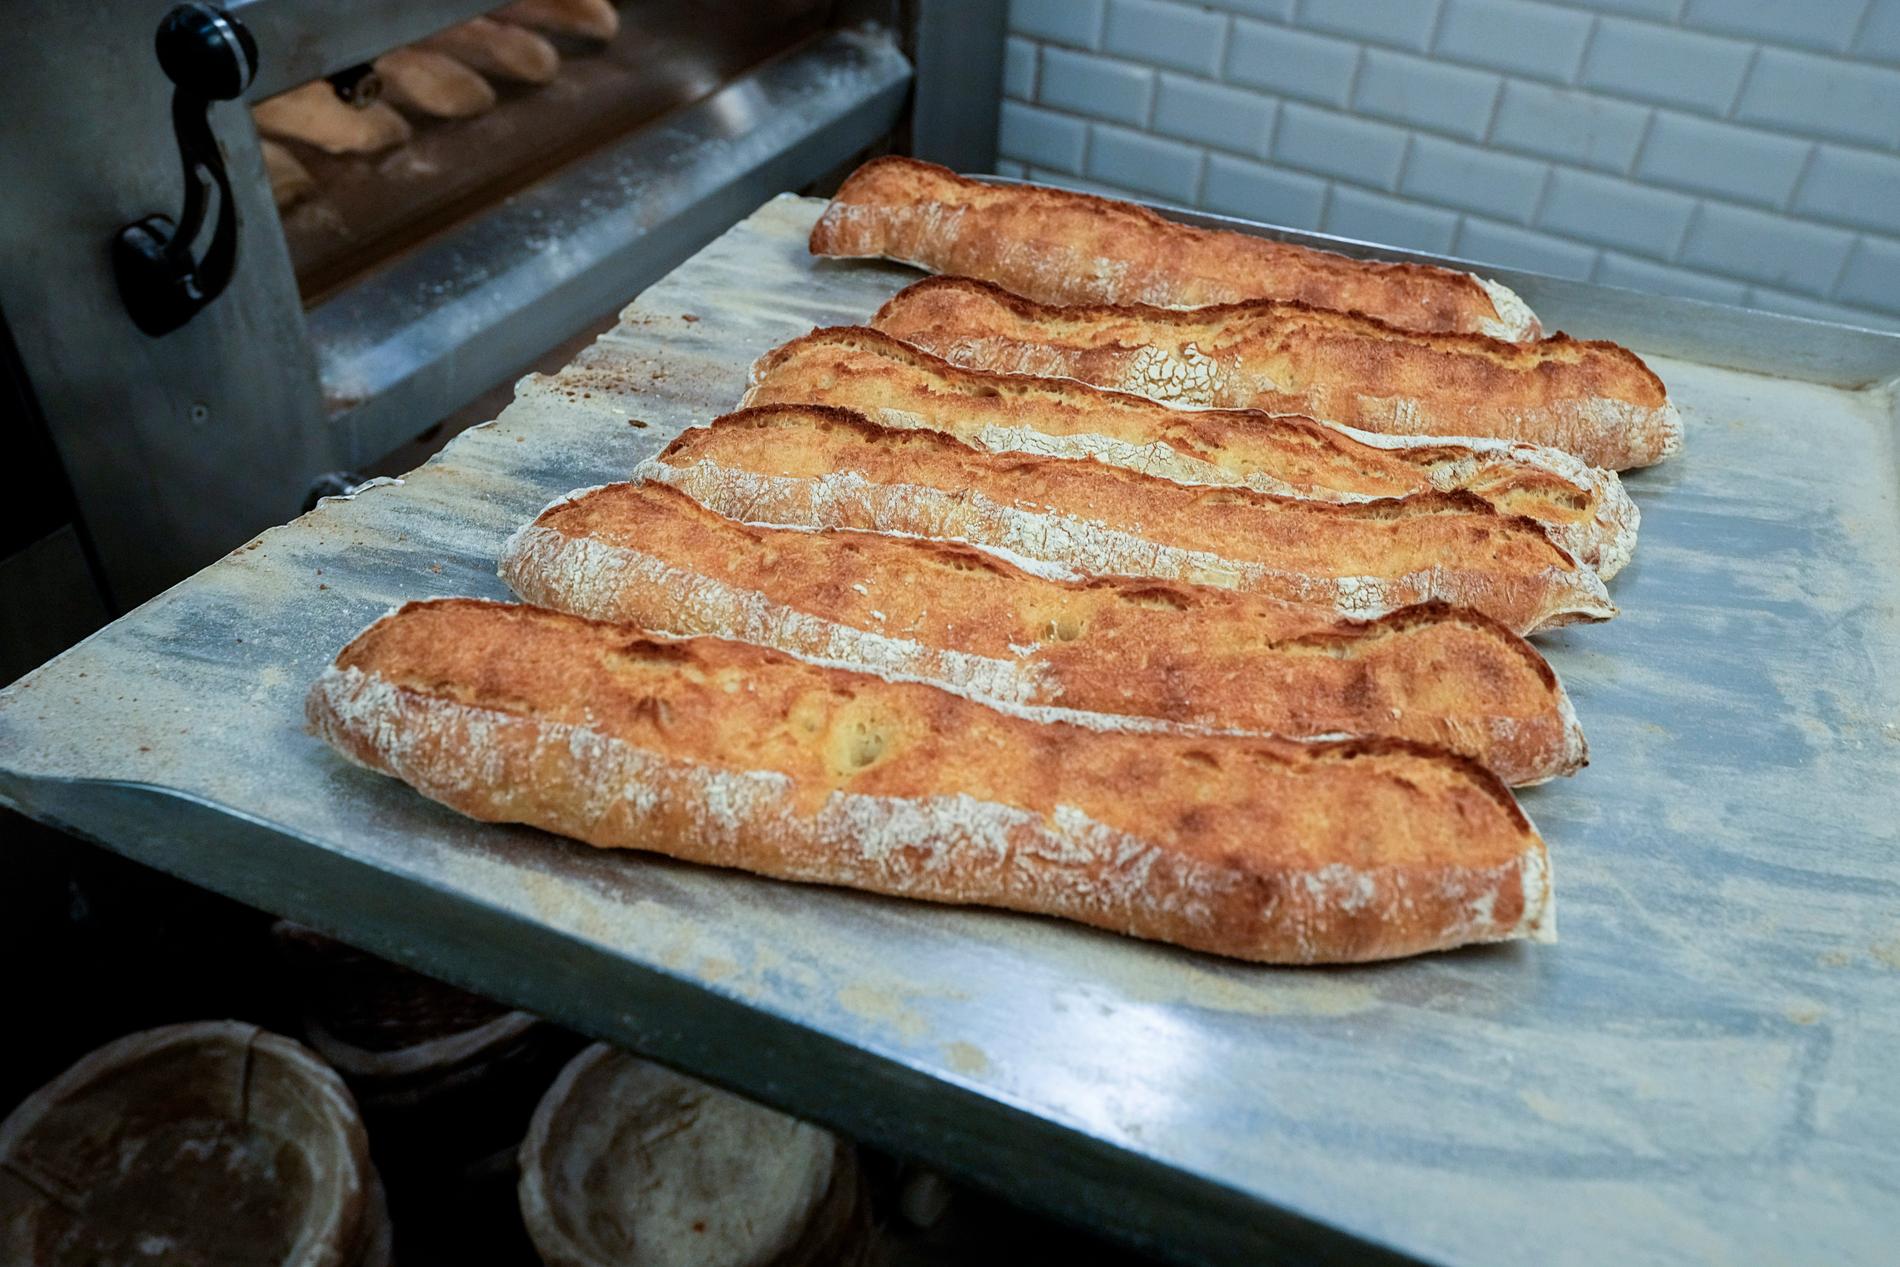 Världens äldsta bröd ska enligt Guinness världsrekordbok vara runt 14 400 år gammalt. Brödet på bilden är betydligt färskare.